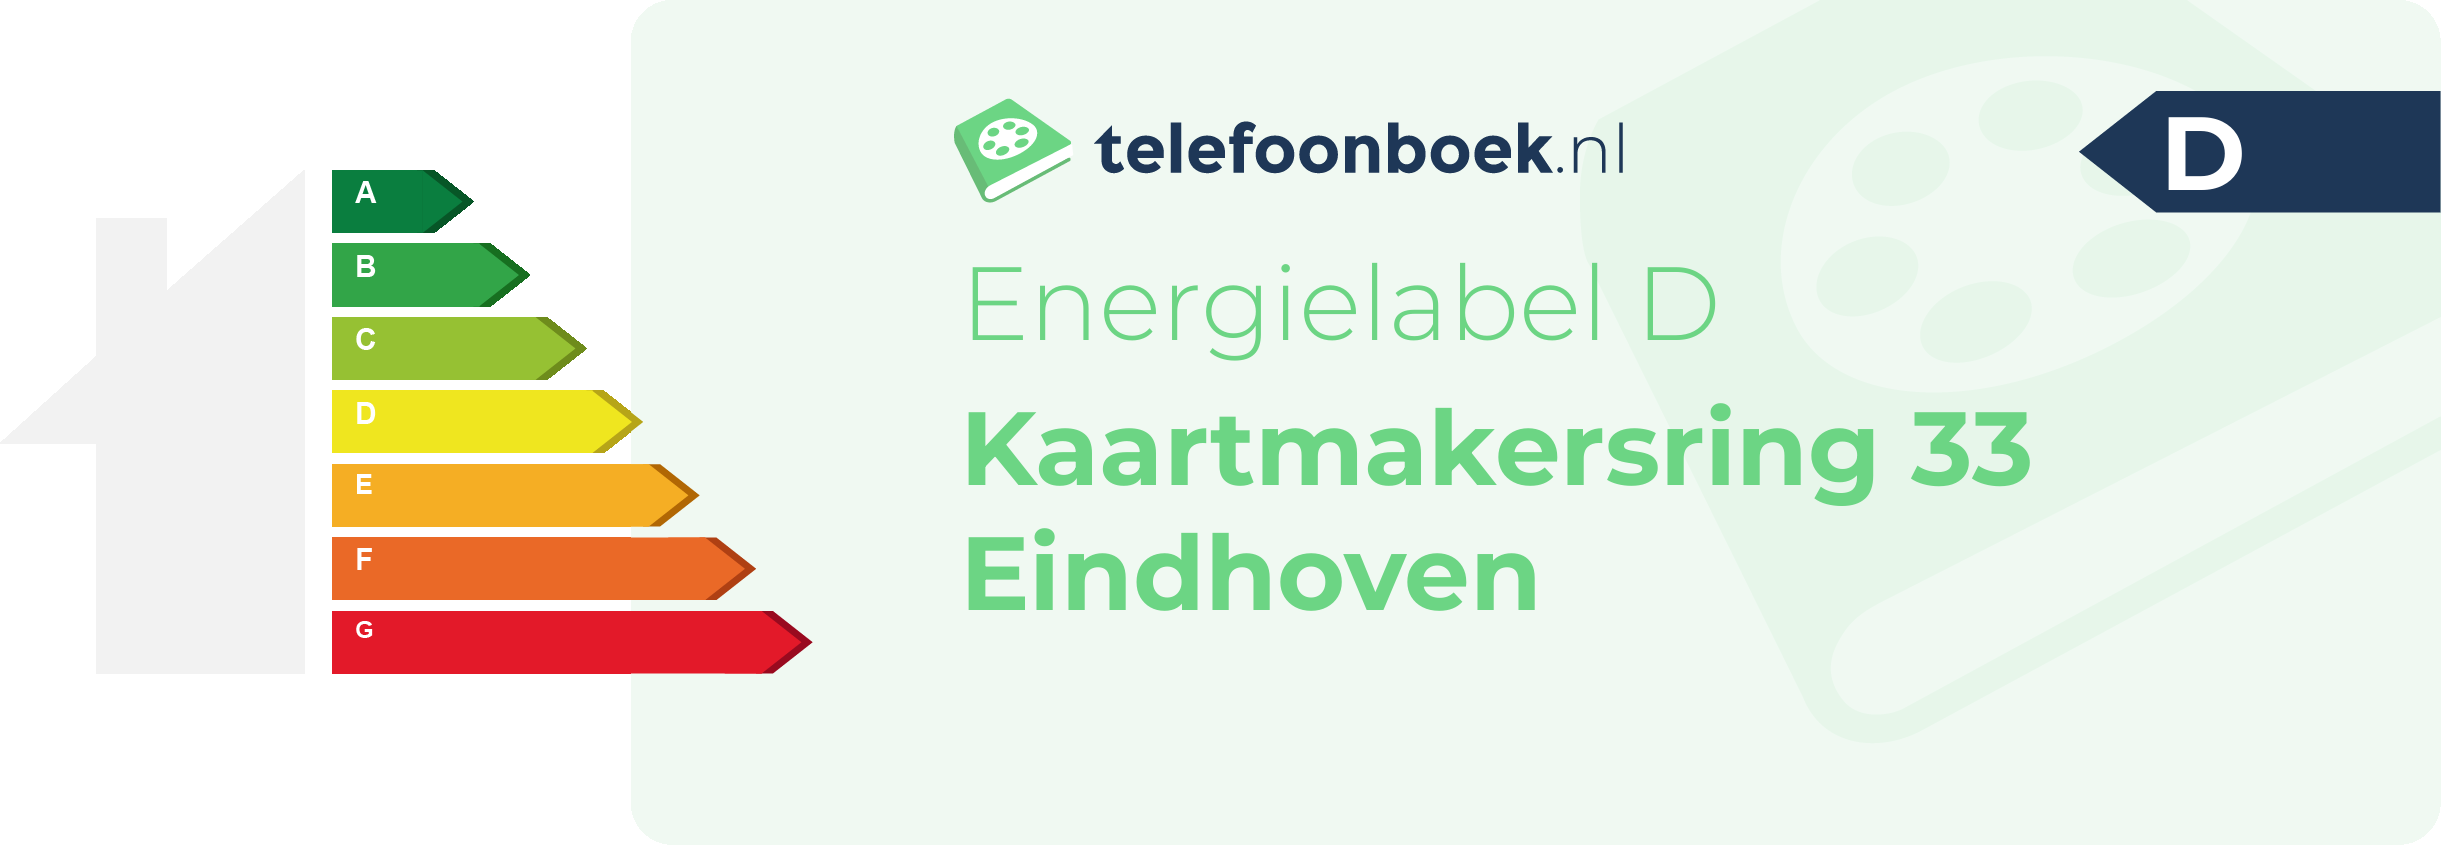 Energielabel Kaartmakersring 33 Eindhoven